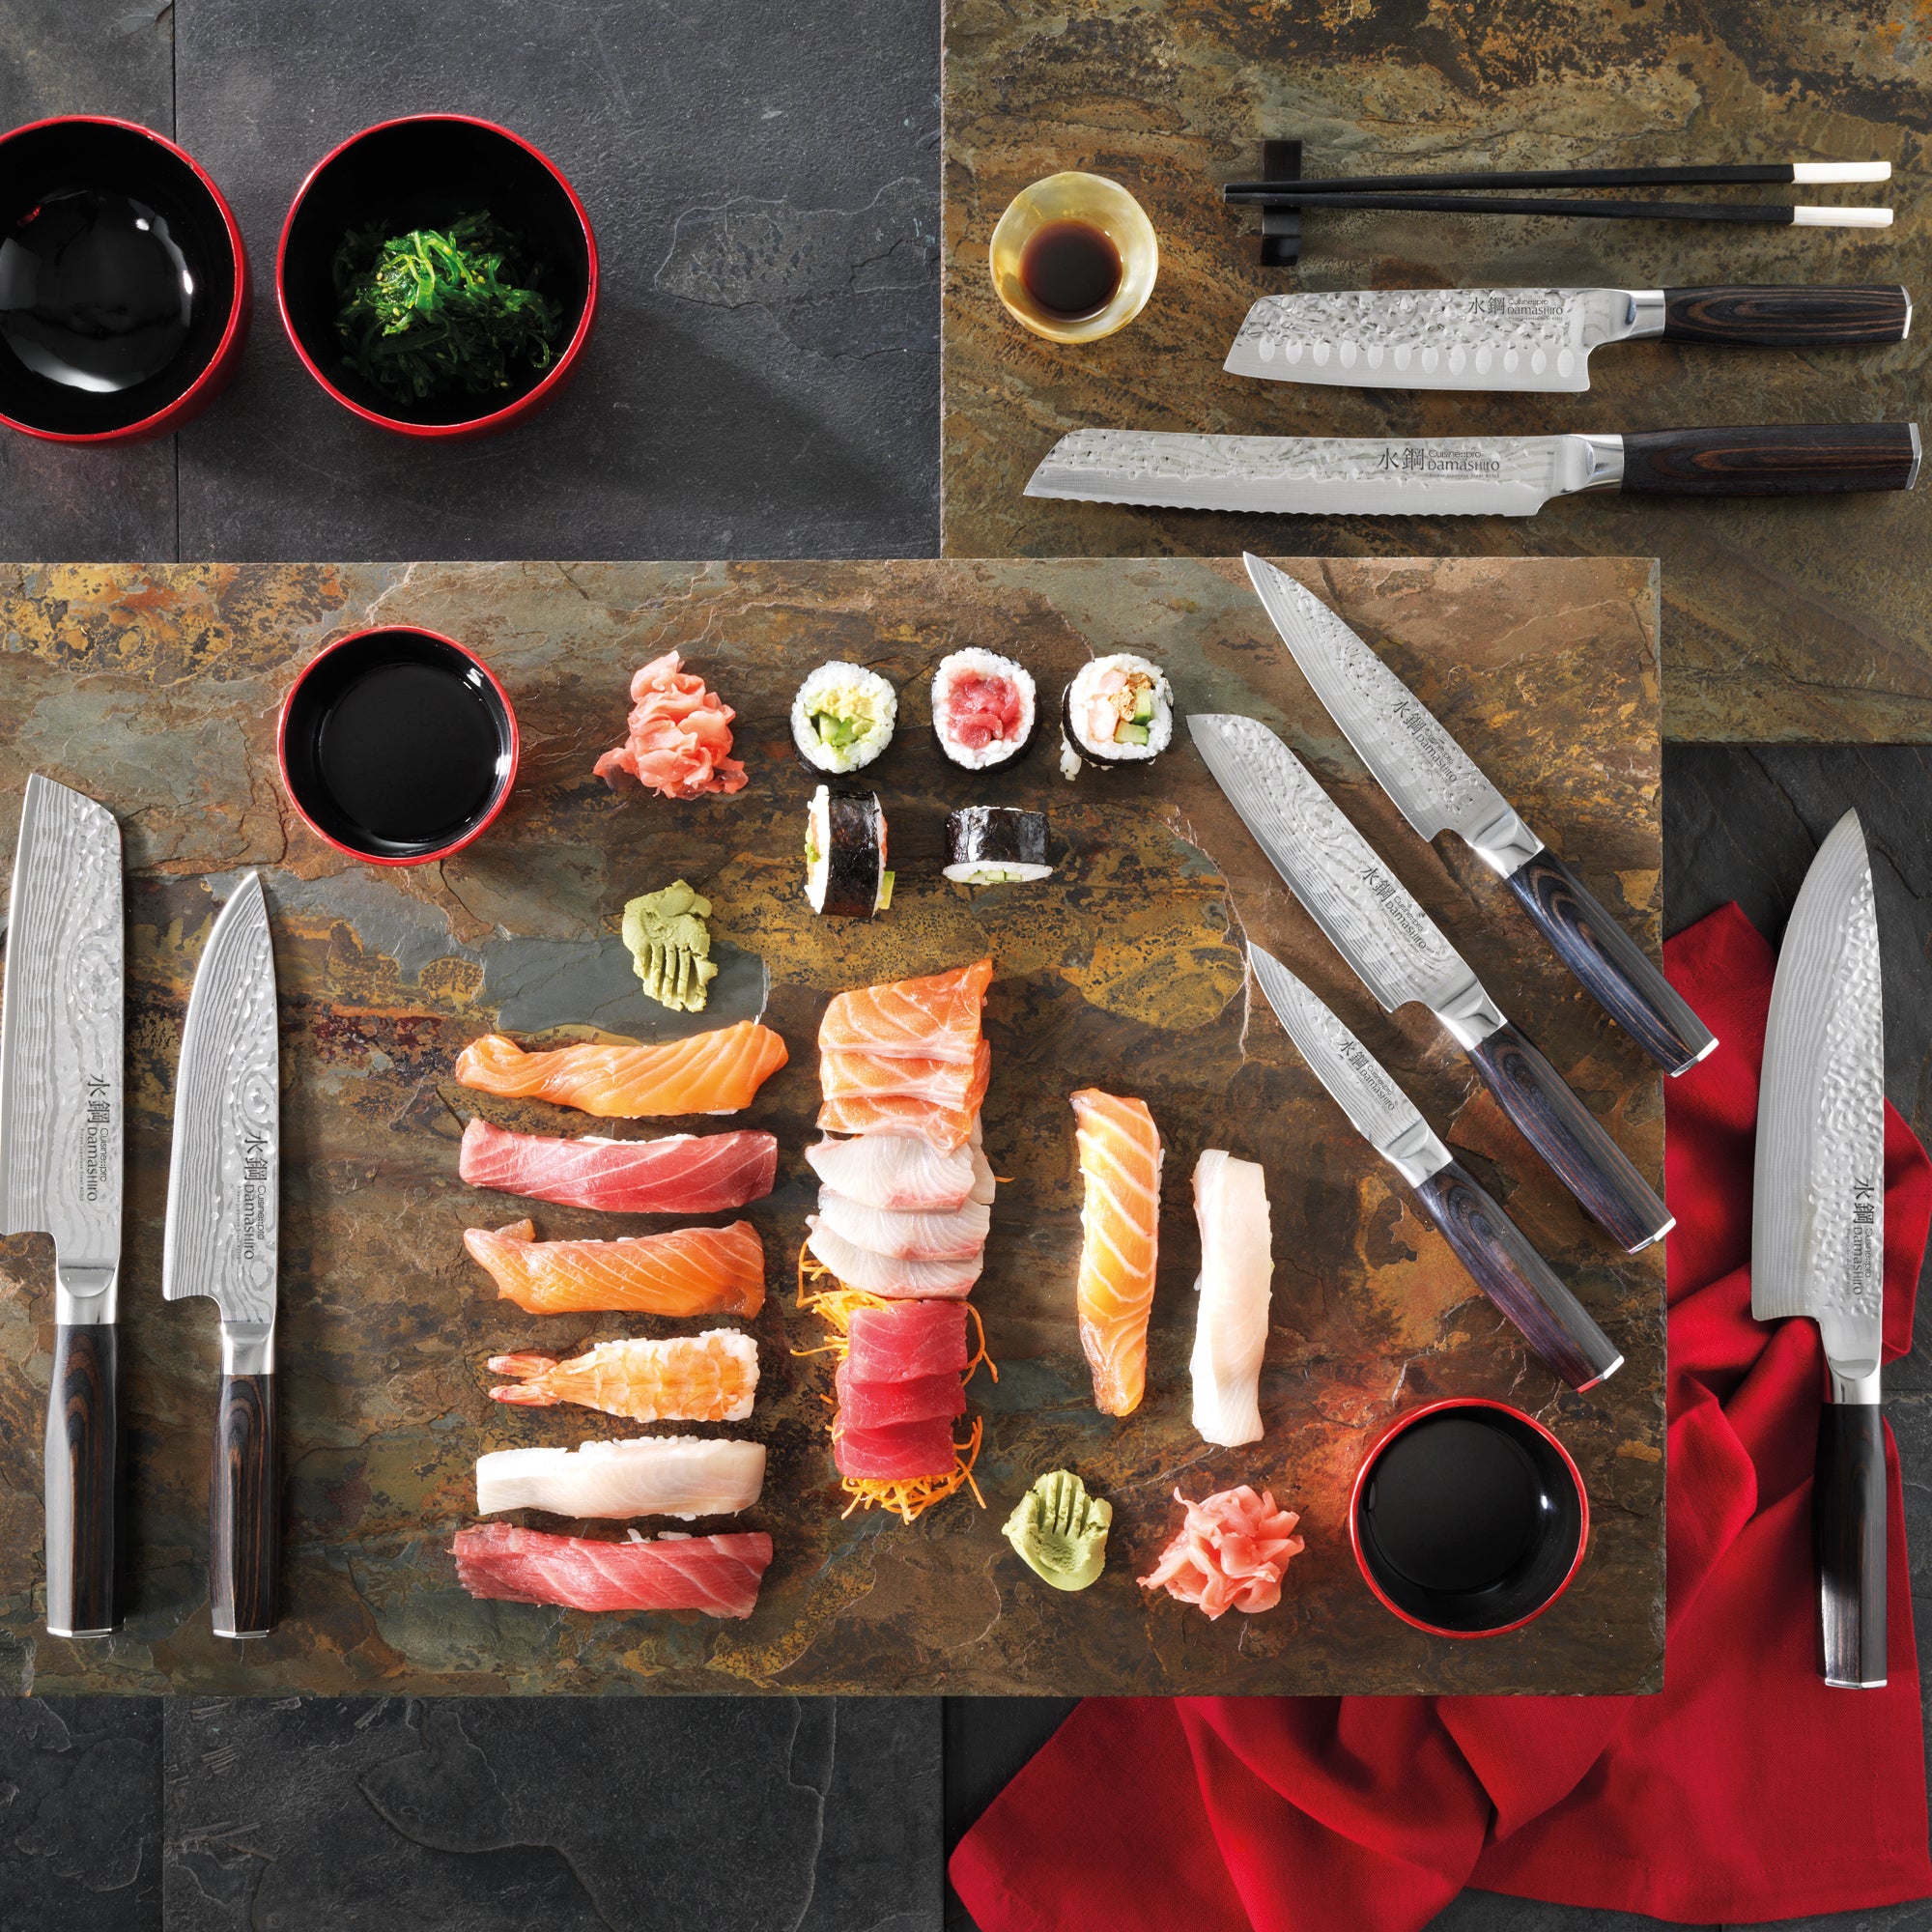 Baccarat Damashiro Knife Set - Top